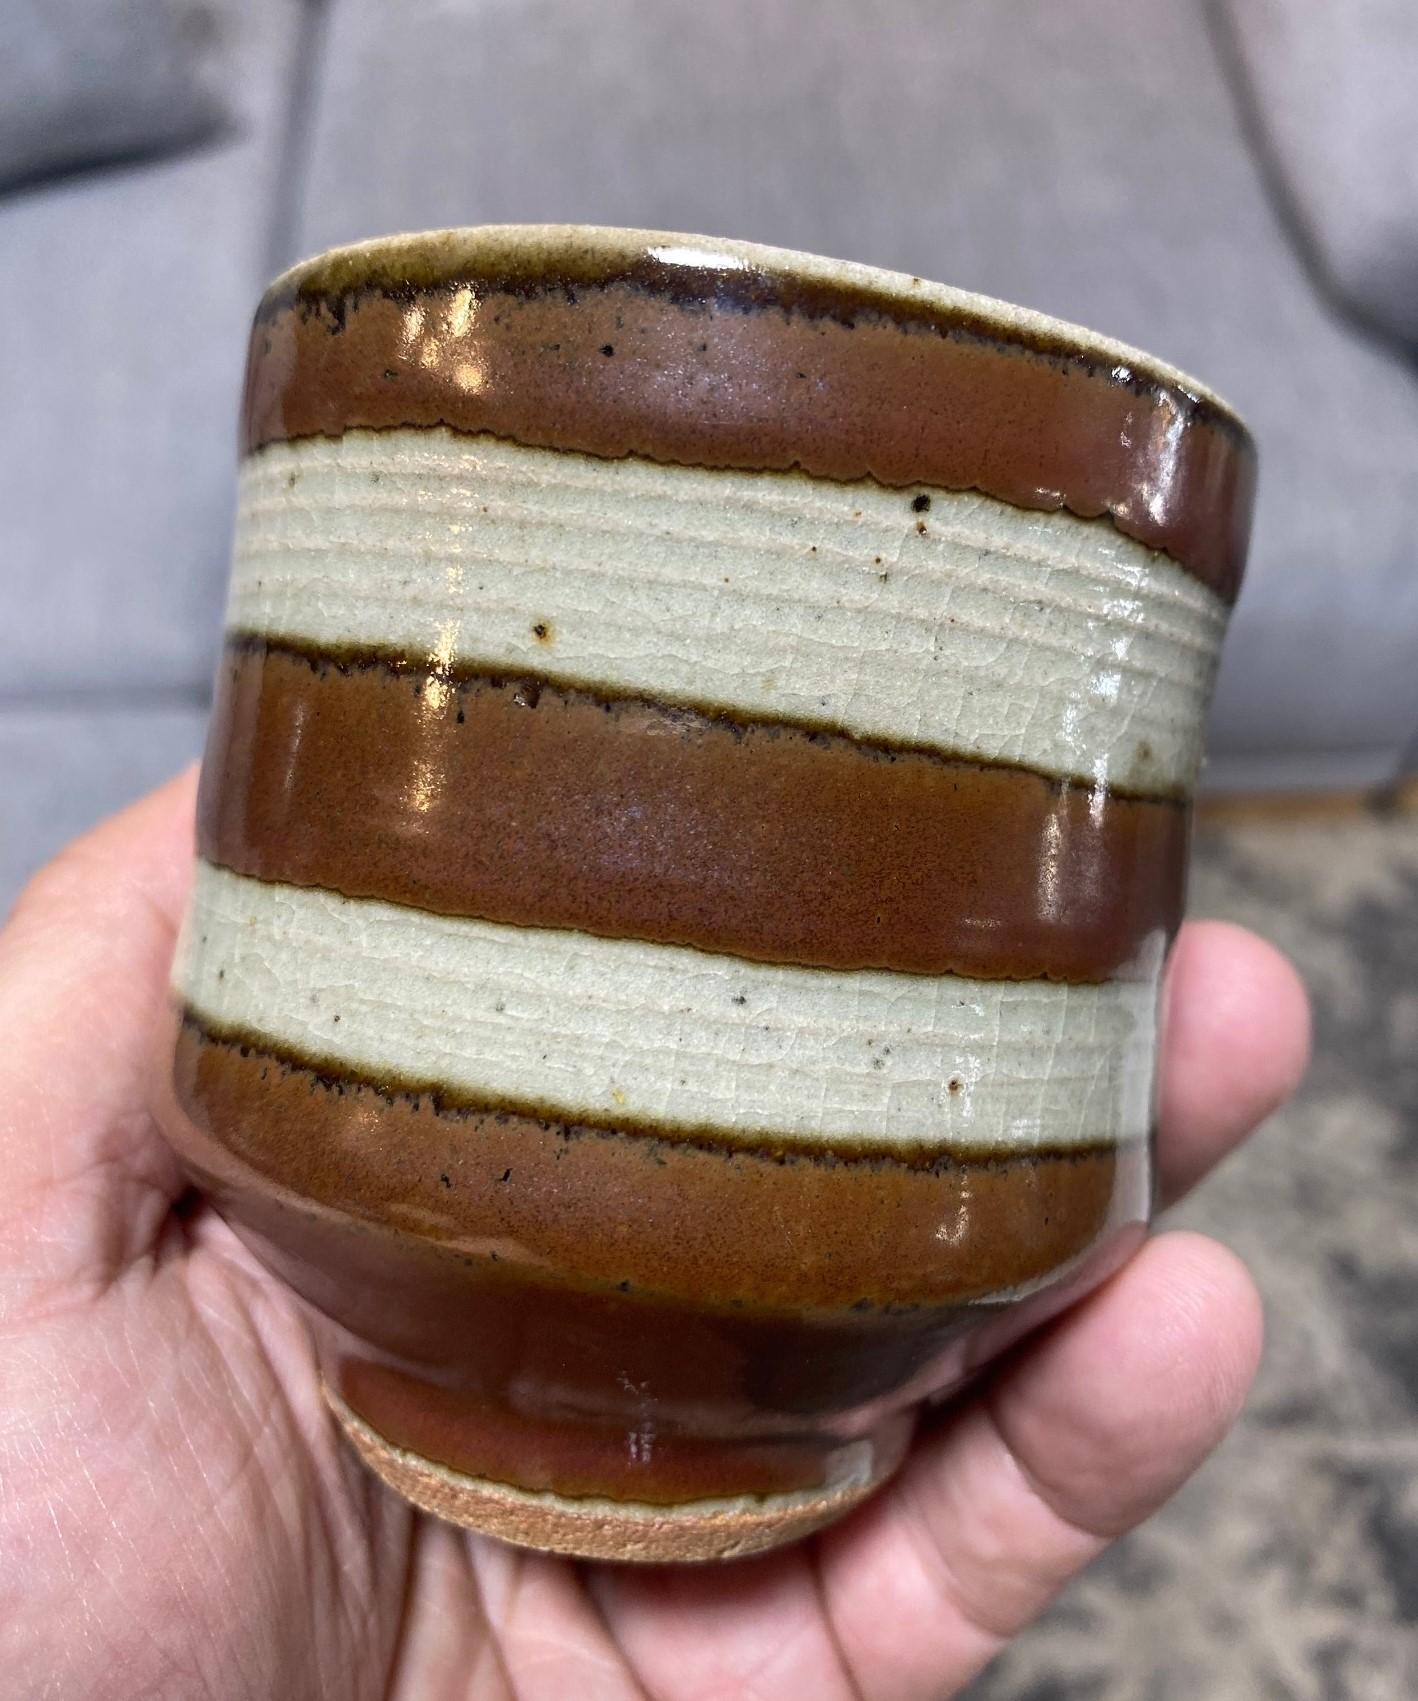 Shoji Hamada Mingei Kakiyu Kaki Glaze Japanese Pottery Yunomi Teacup Signed Box For Sale 5